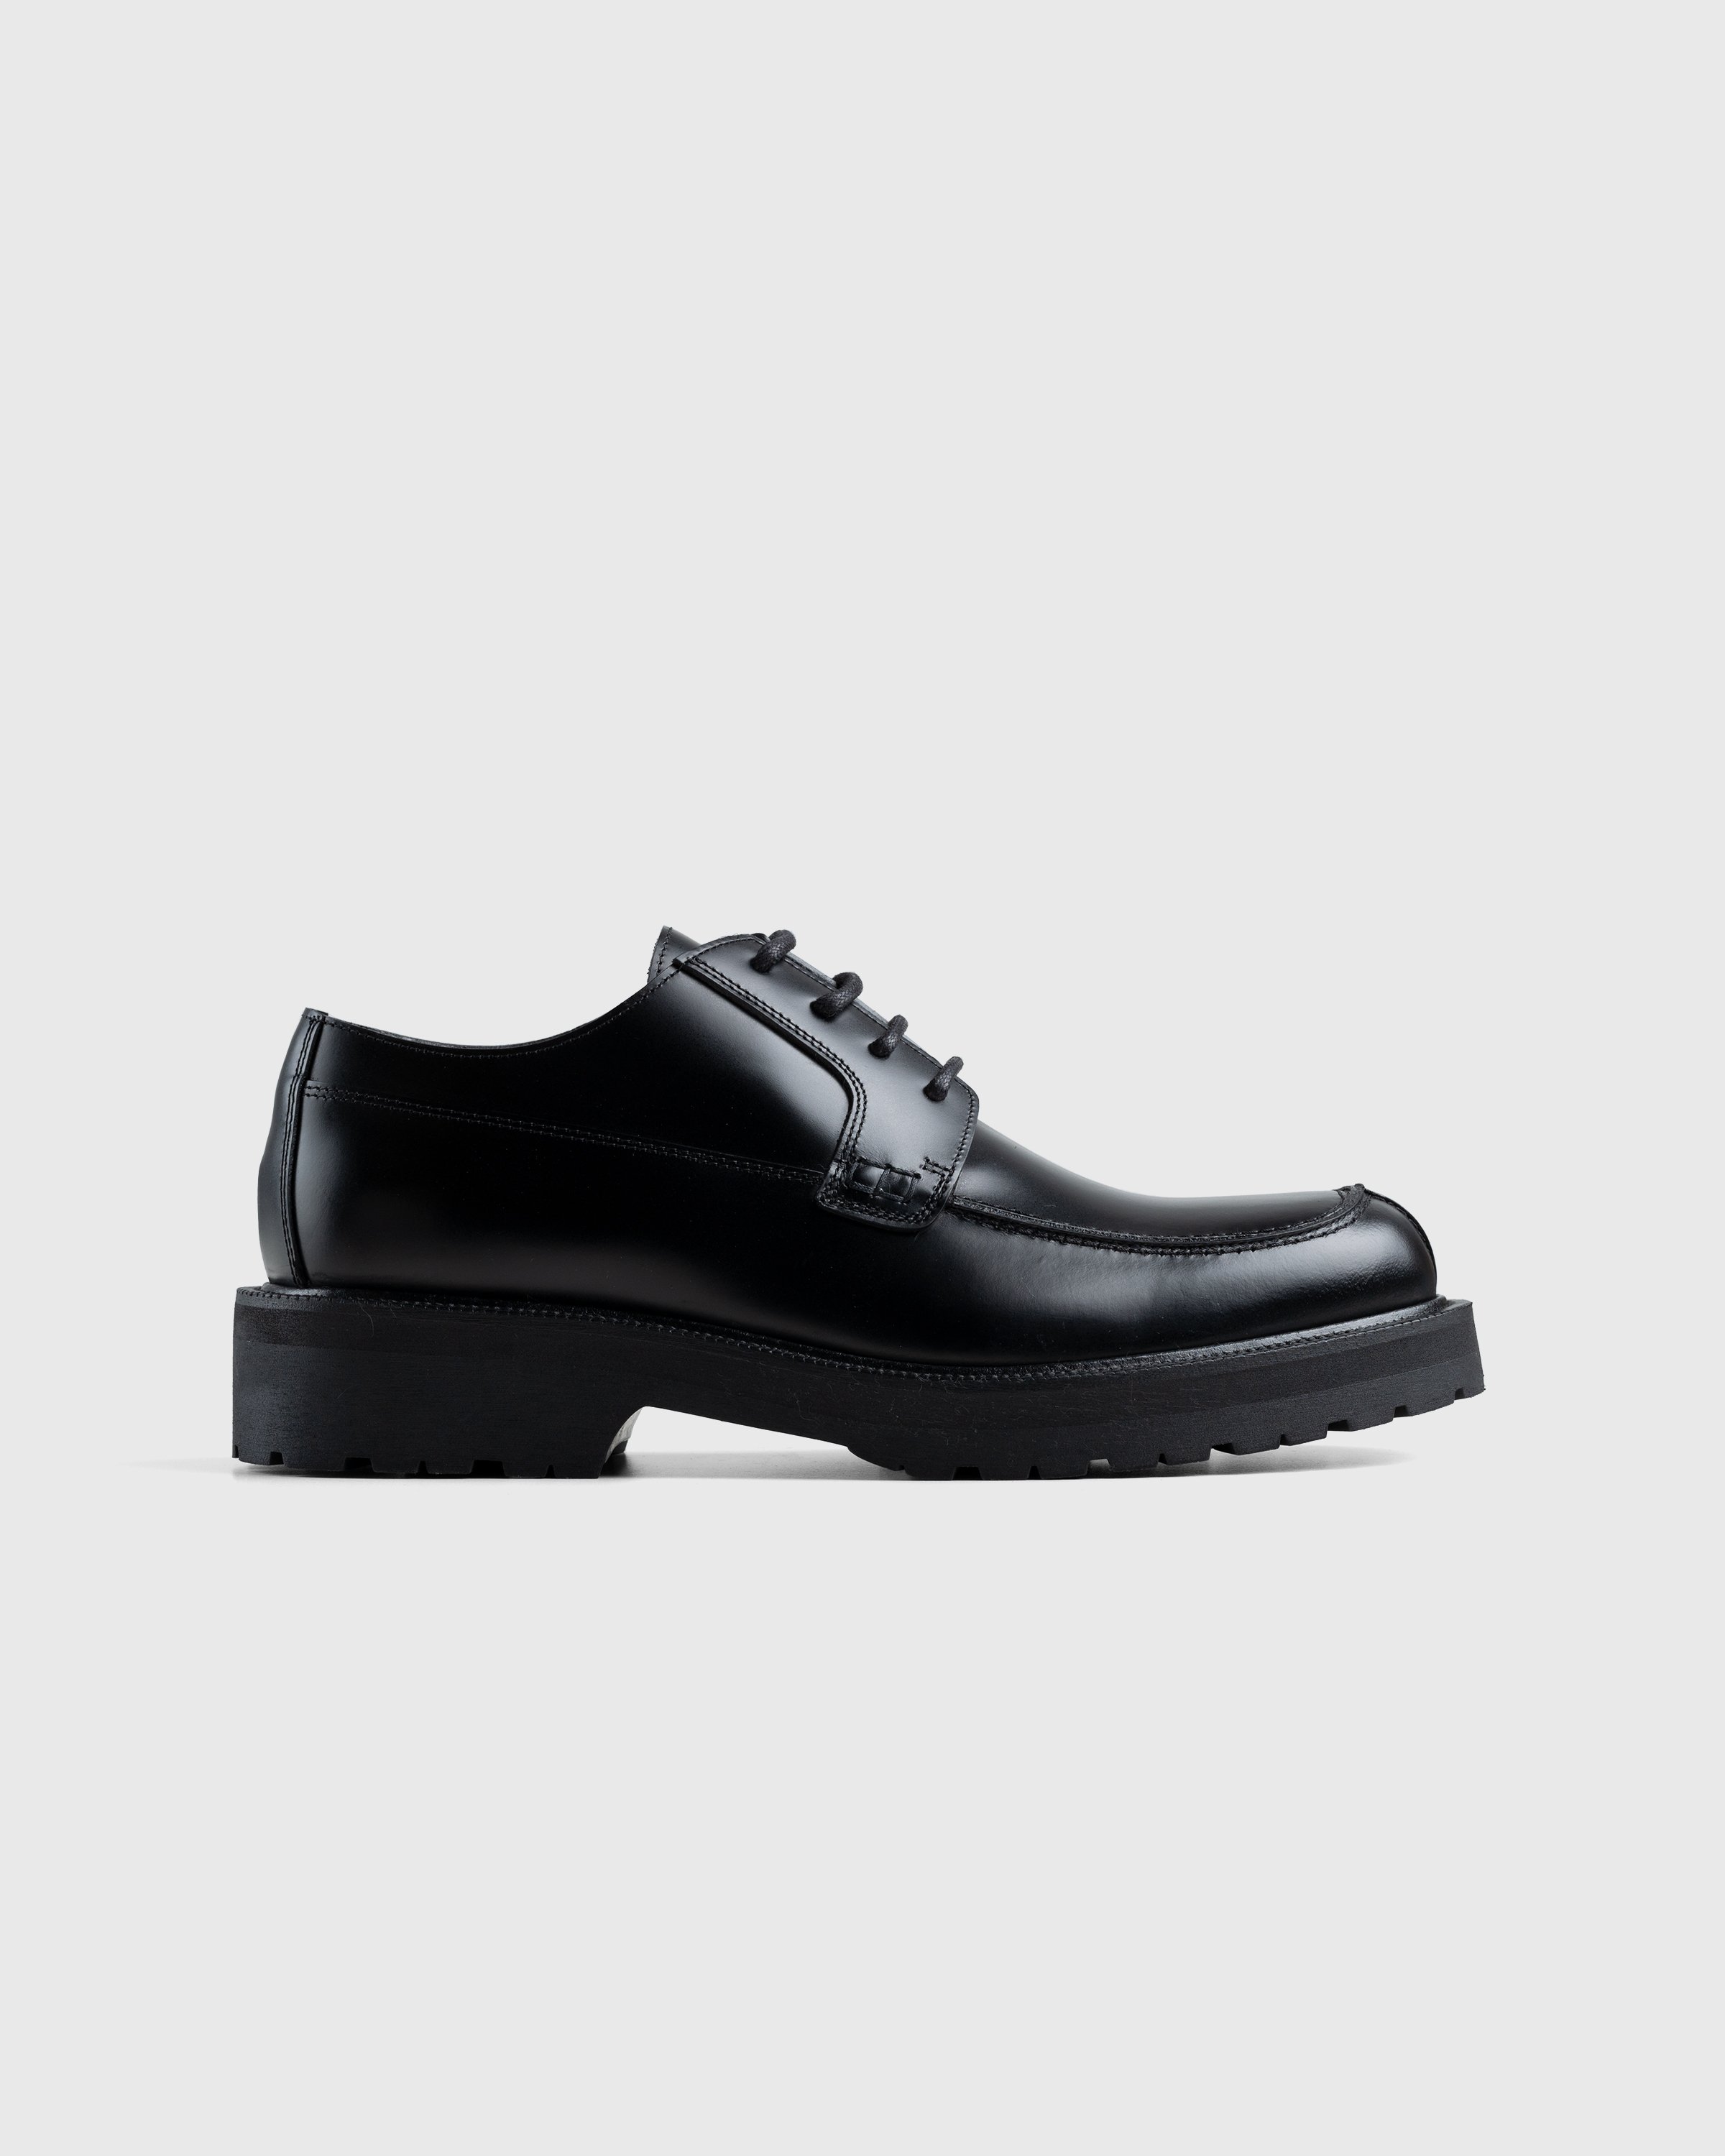 Dries van Noten - Patent Leather Derbies - Footwear - Black - Image 1